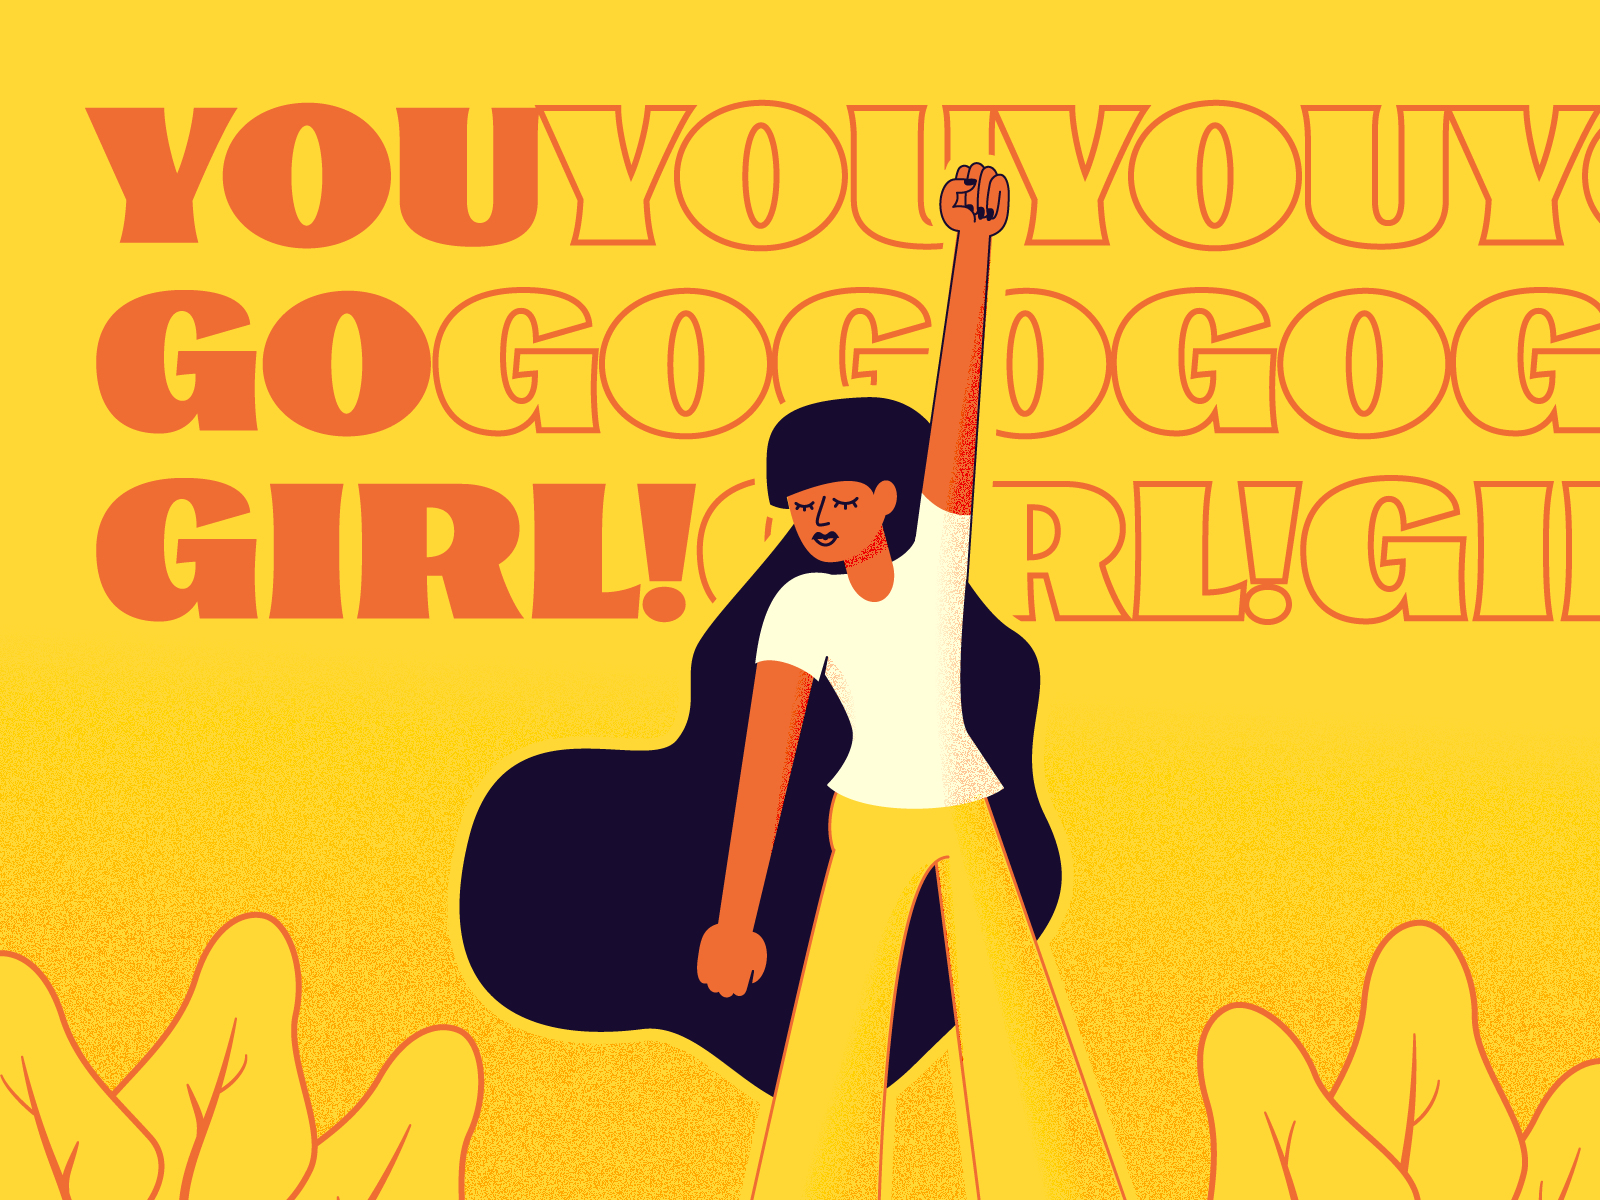 You go girl! by Scott Jones for Underbelly on Dribbble